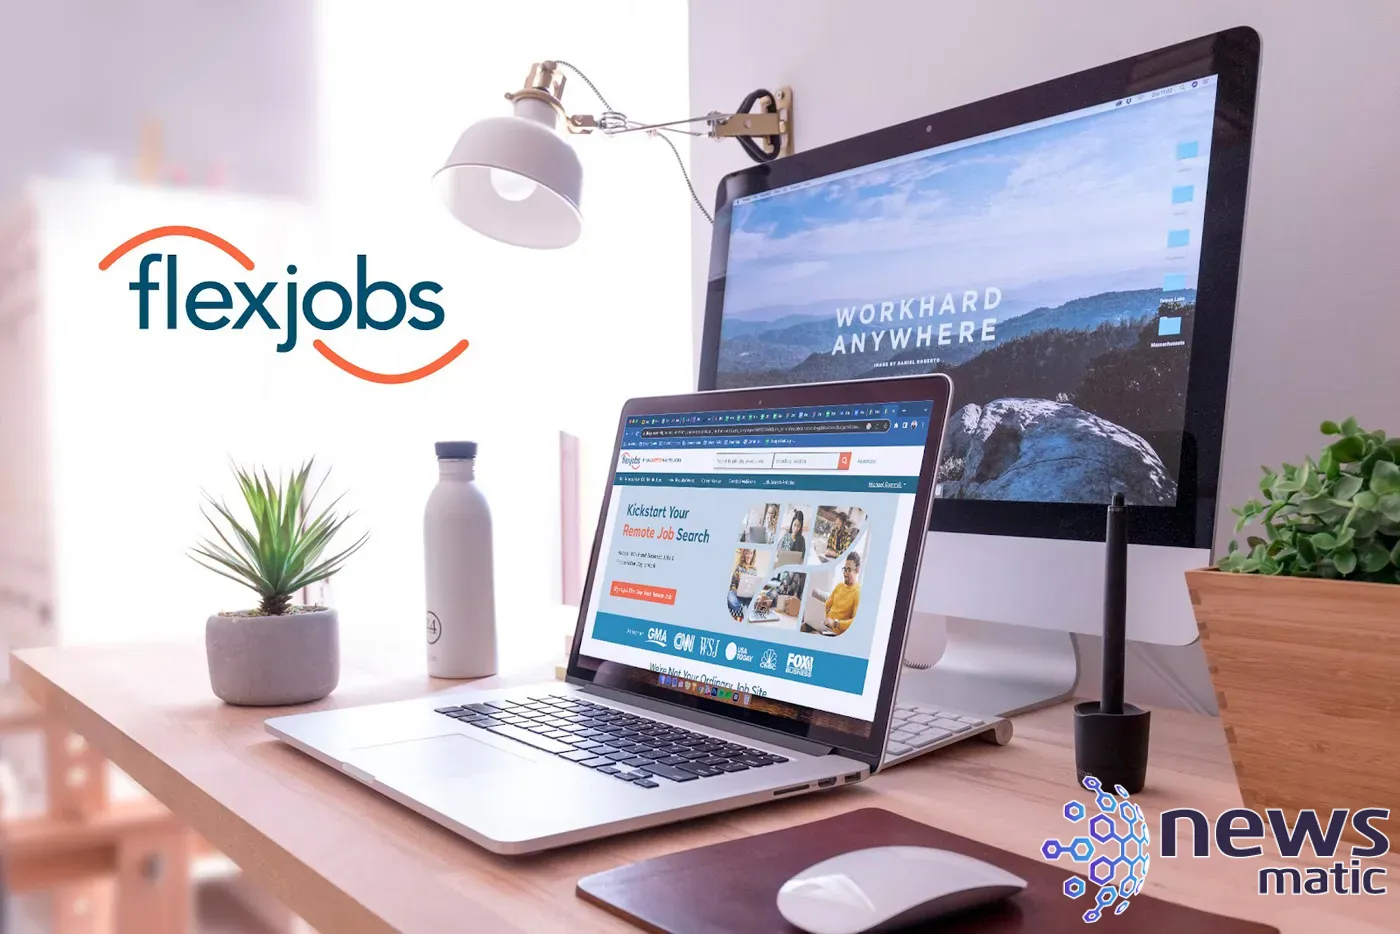 Encuentra los mejores trabajos flexibles y remotos en FlexJobs por solo $29.99 al año - Tecnología y trabajo | Imagen 1 Newsmatic